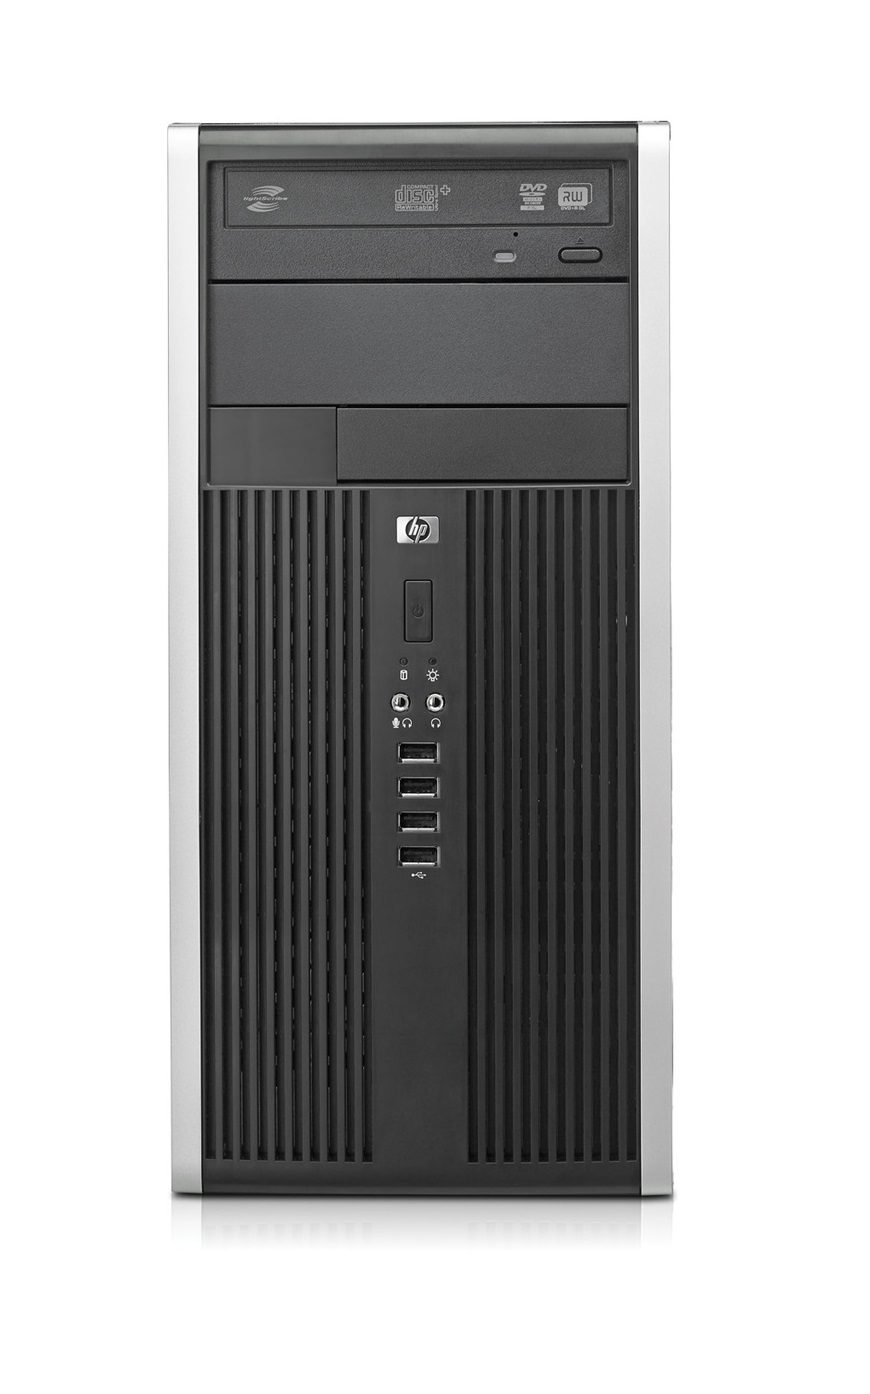 HP Compaq Pro 6305 MT | AMD A4-5300B 3,4 GHz | RAM 4 GB | Festplatte 500 GB | Windows 10 Pro